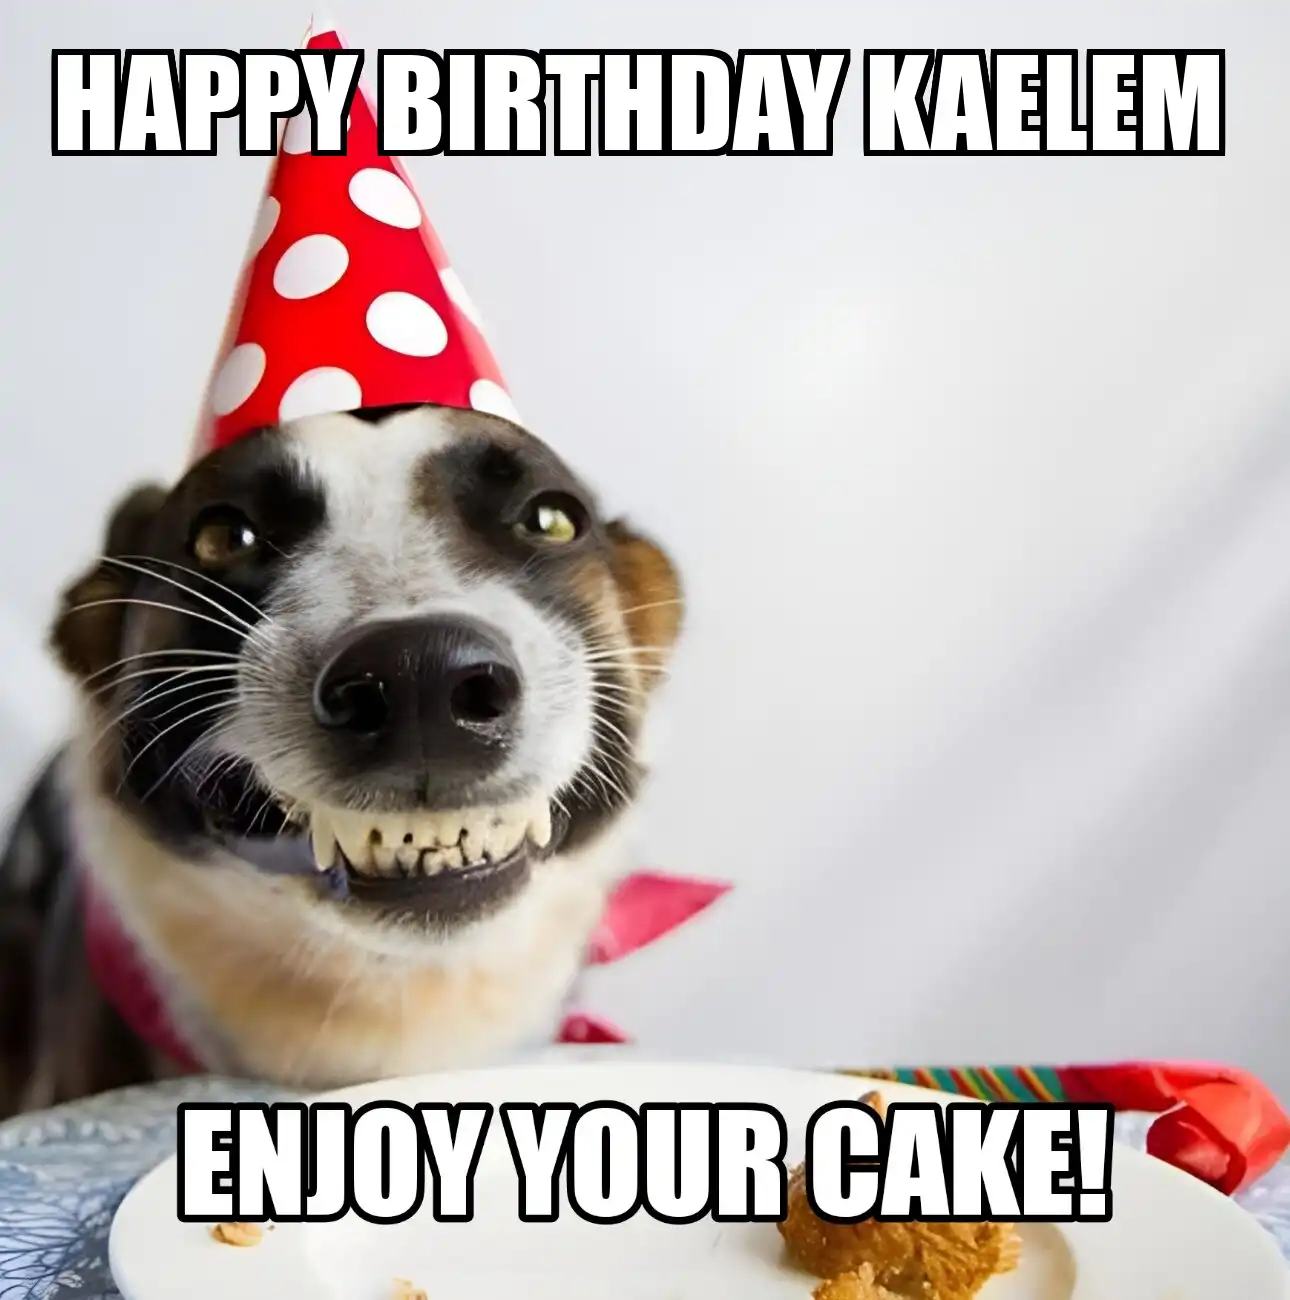 Happy Birthday Kaelem Enjoy Your Cake Dog Meme